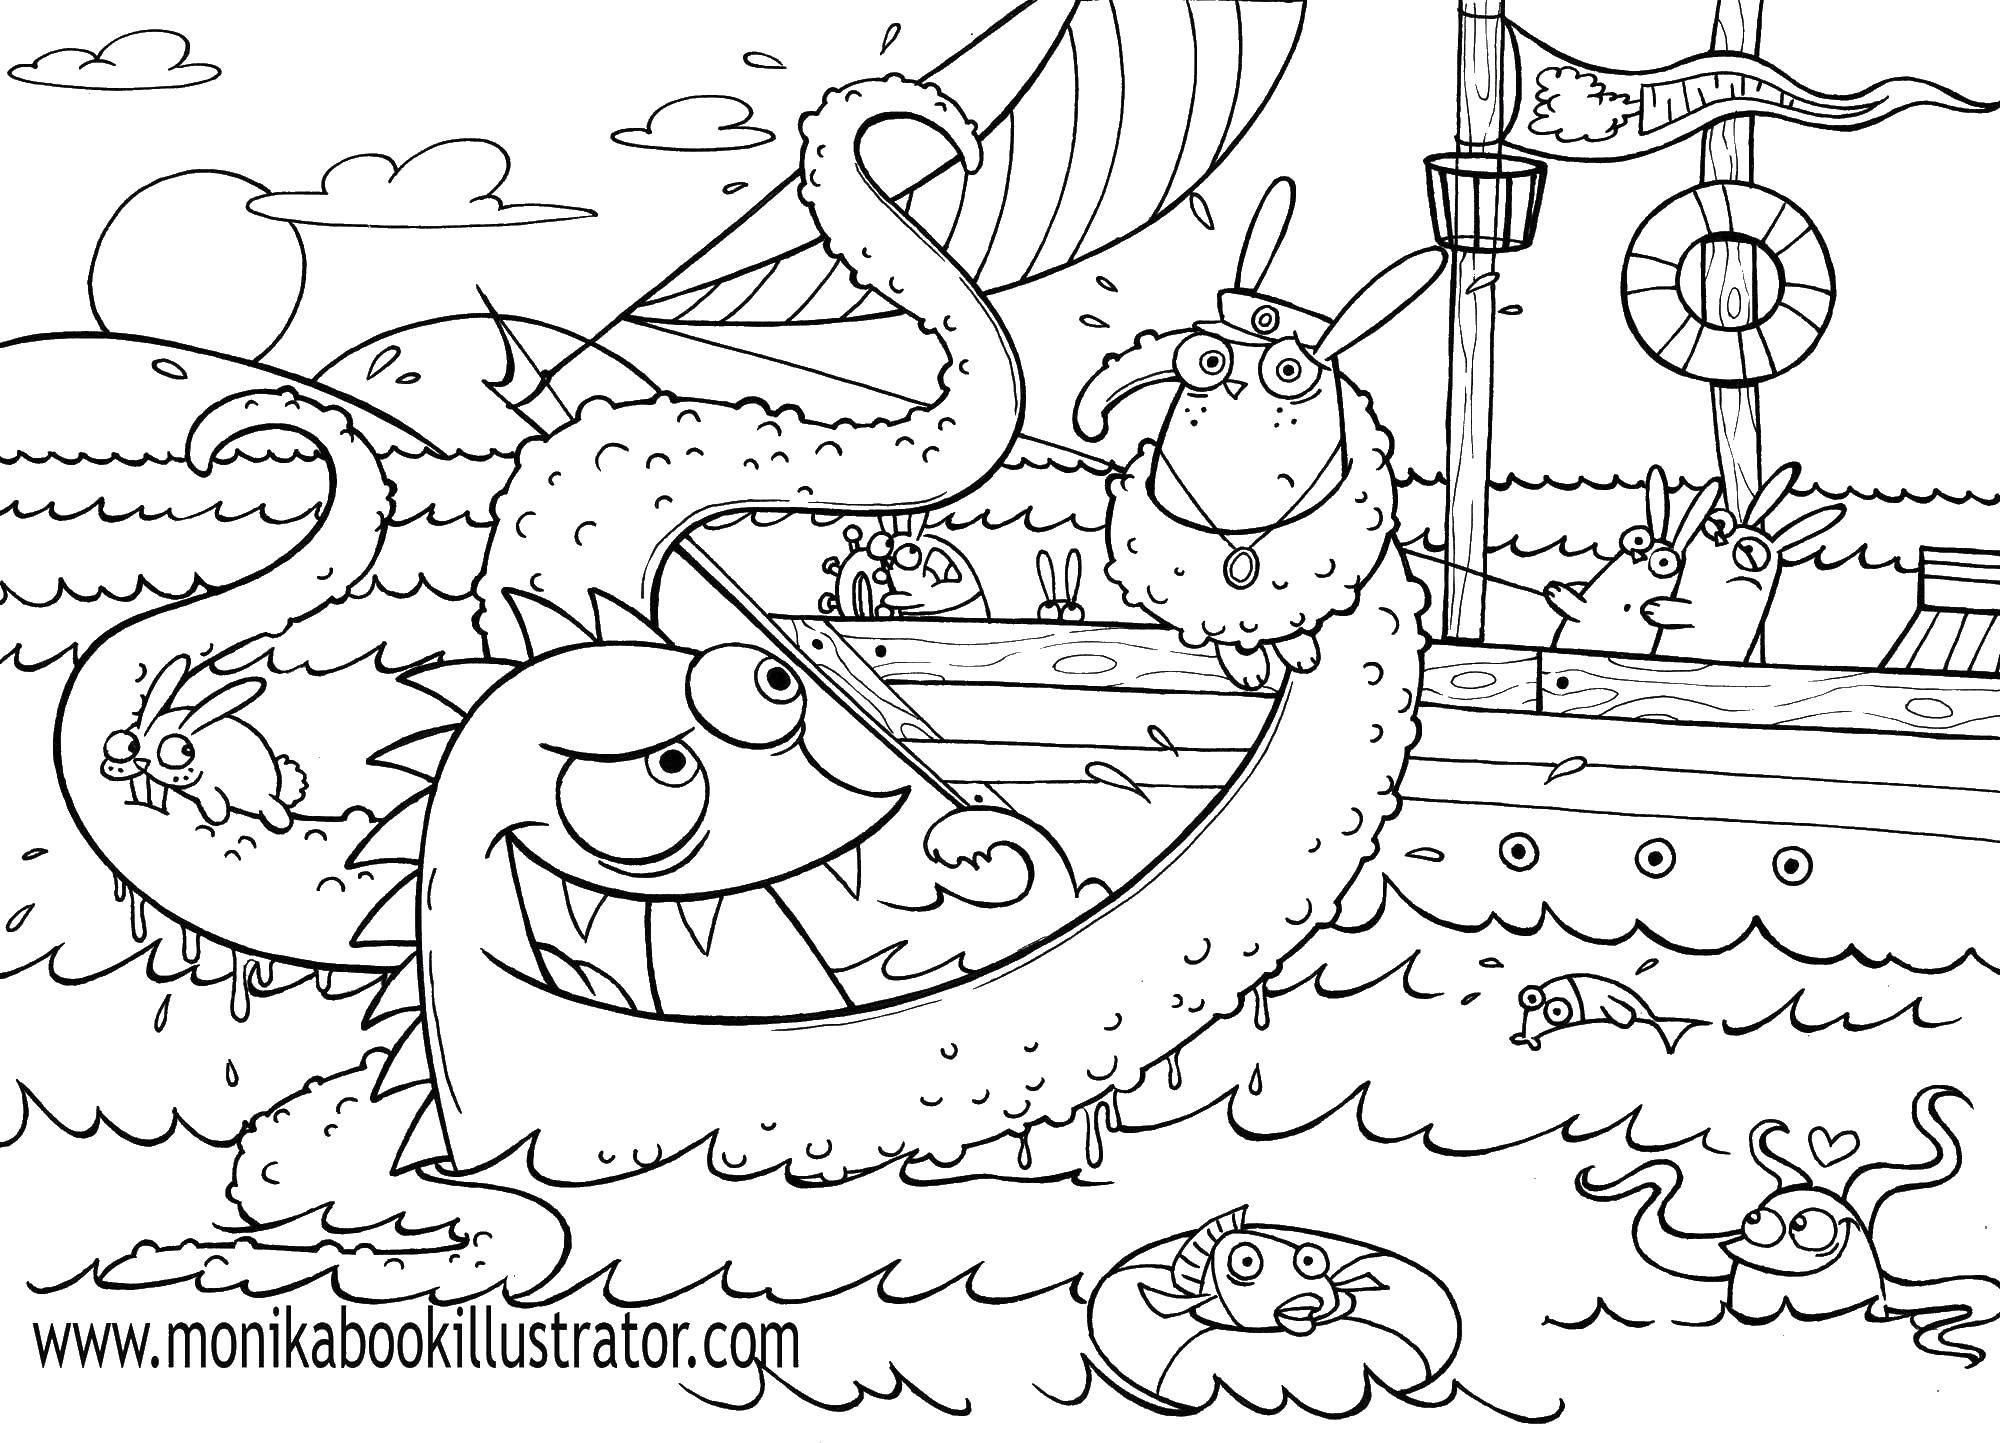 Розмальовки  Напад восьминога. Завантажити розмальовку Підводний світ.  Роздрукувати ,Монстри,